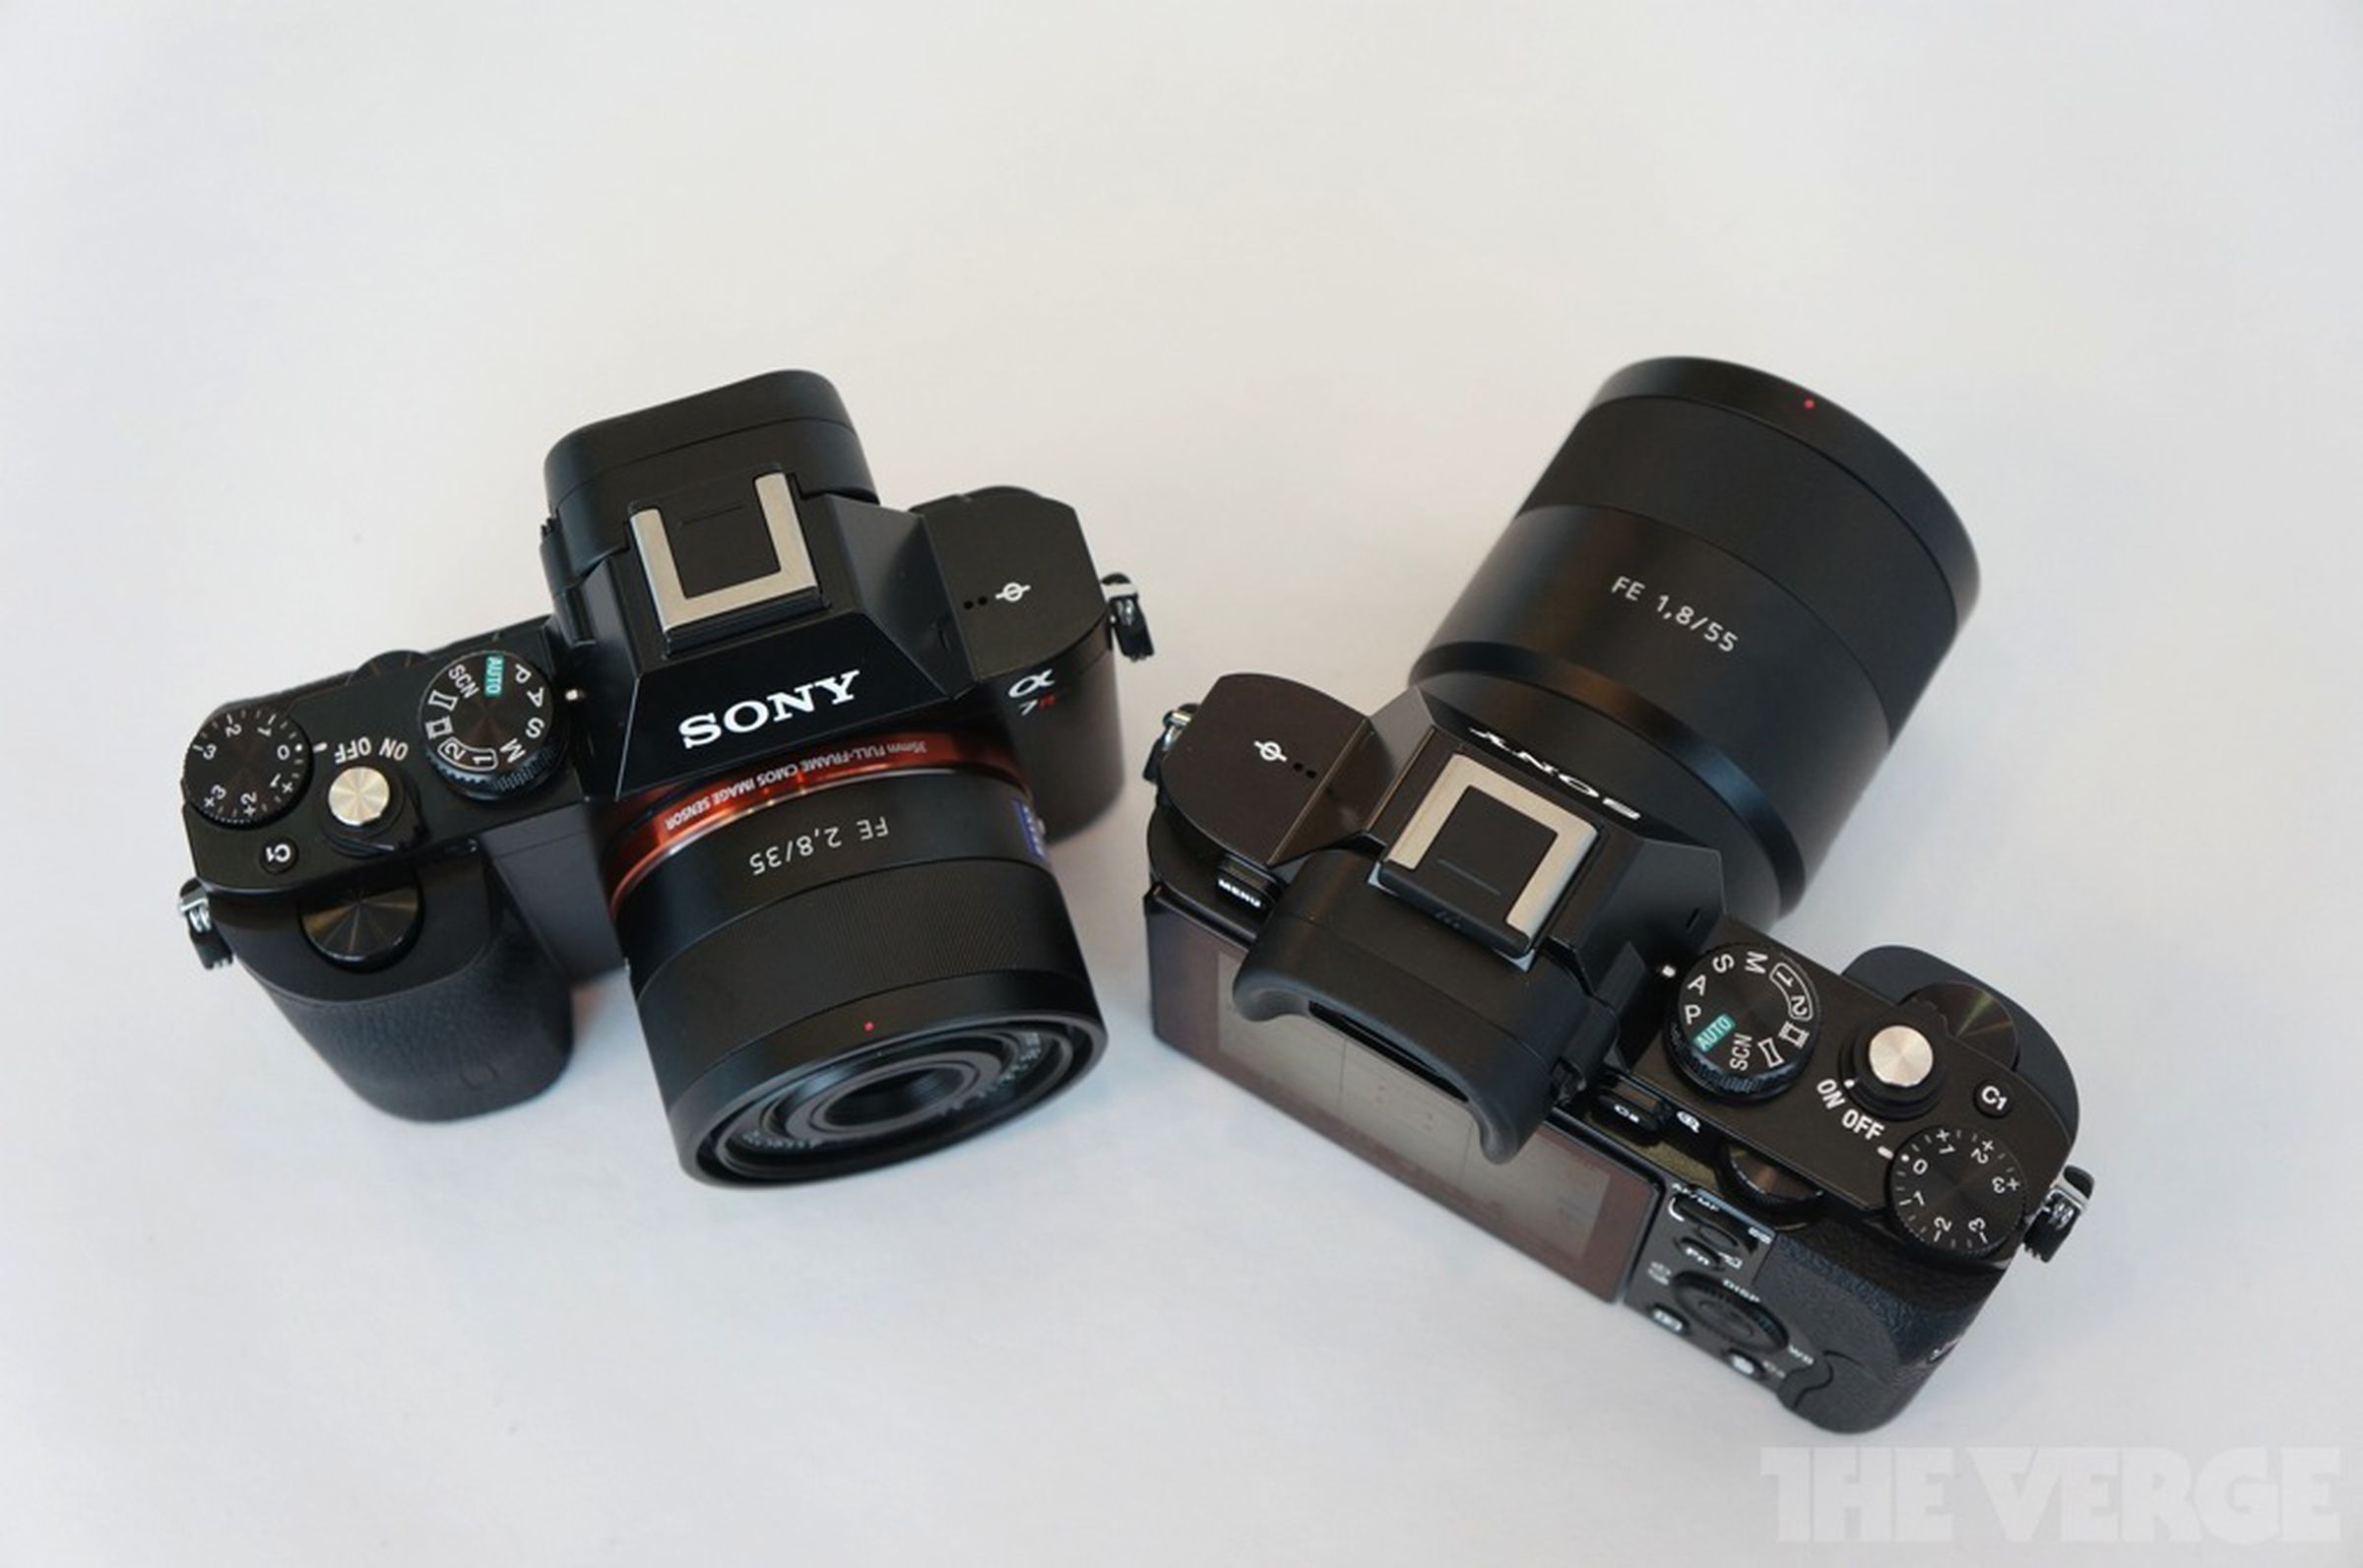 Sony Alpha 7 and Alpha 7R hands-on photos